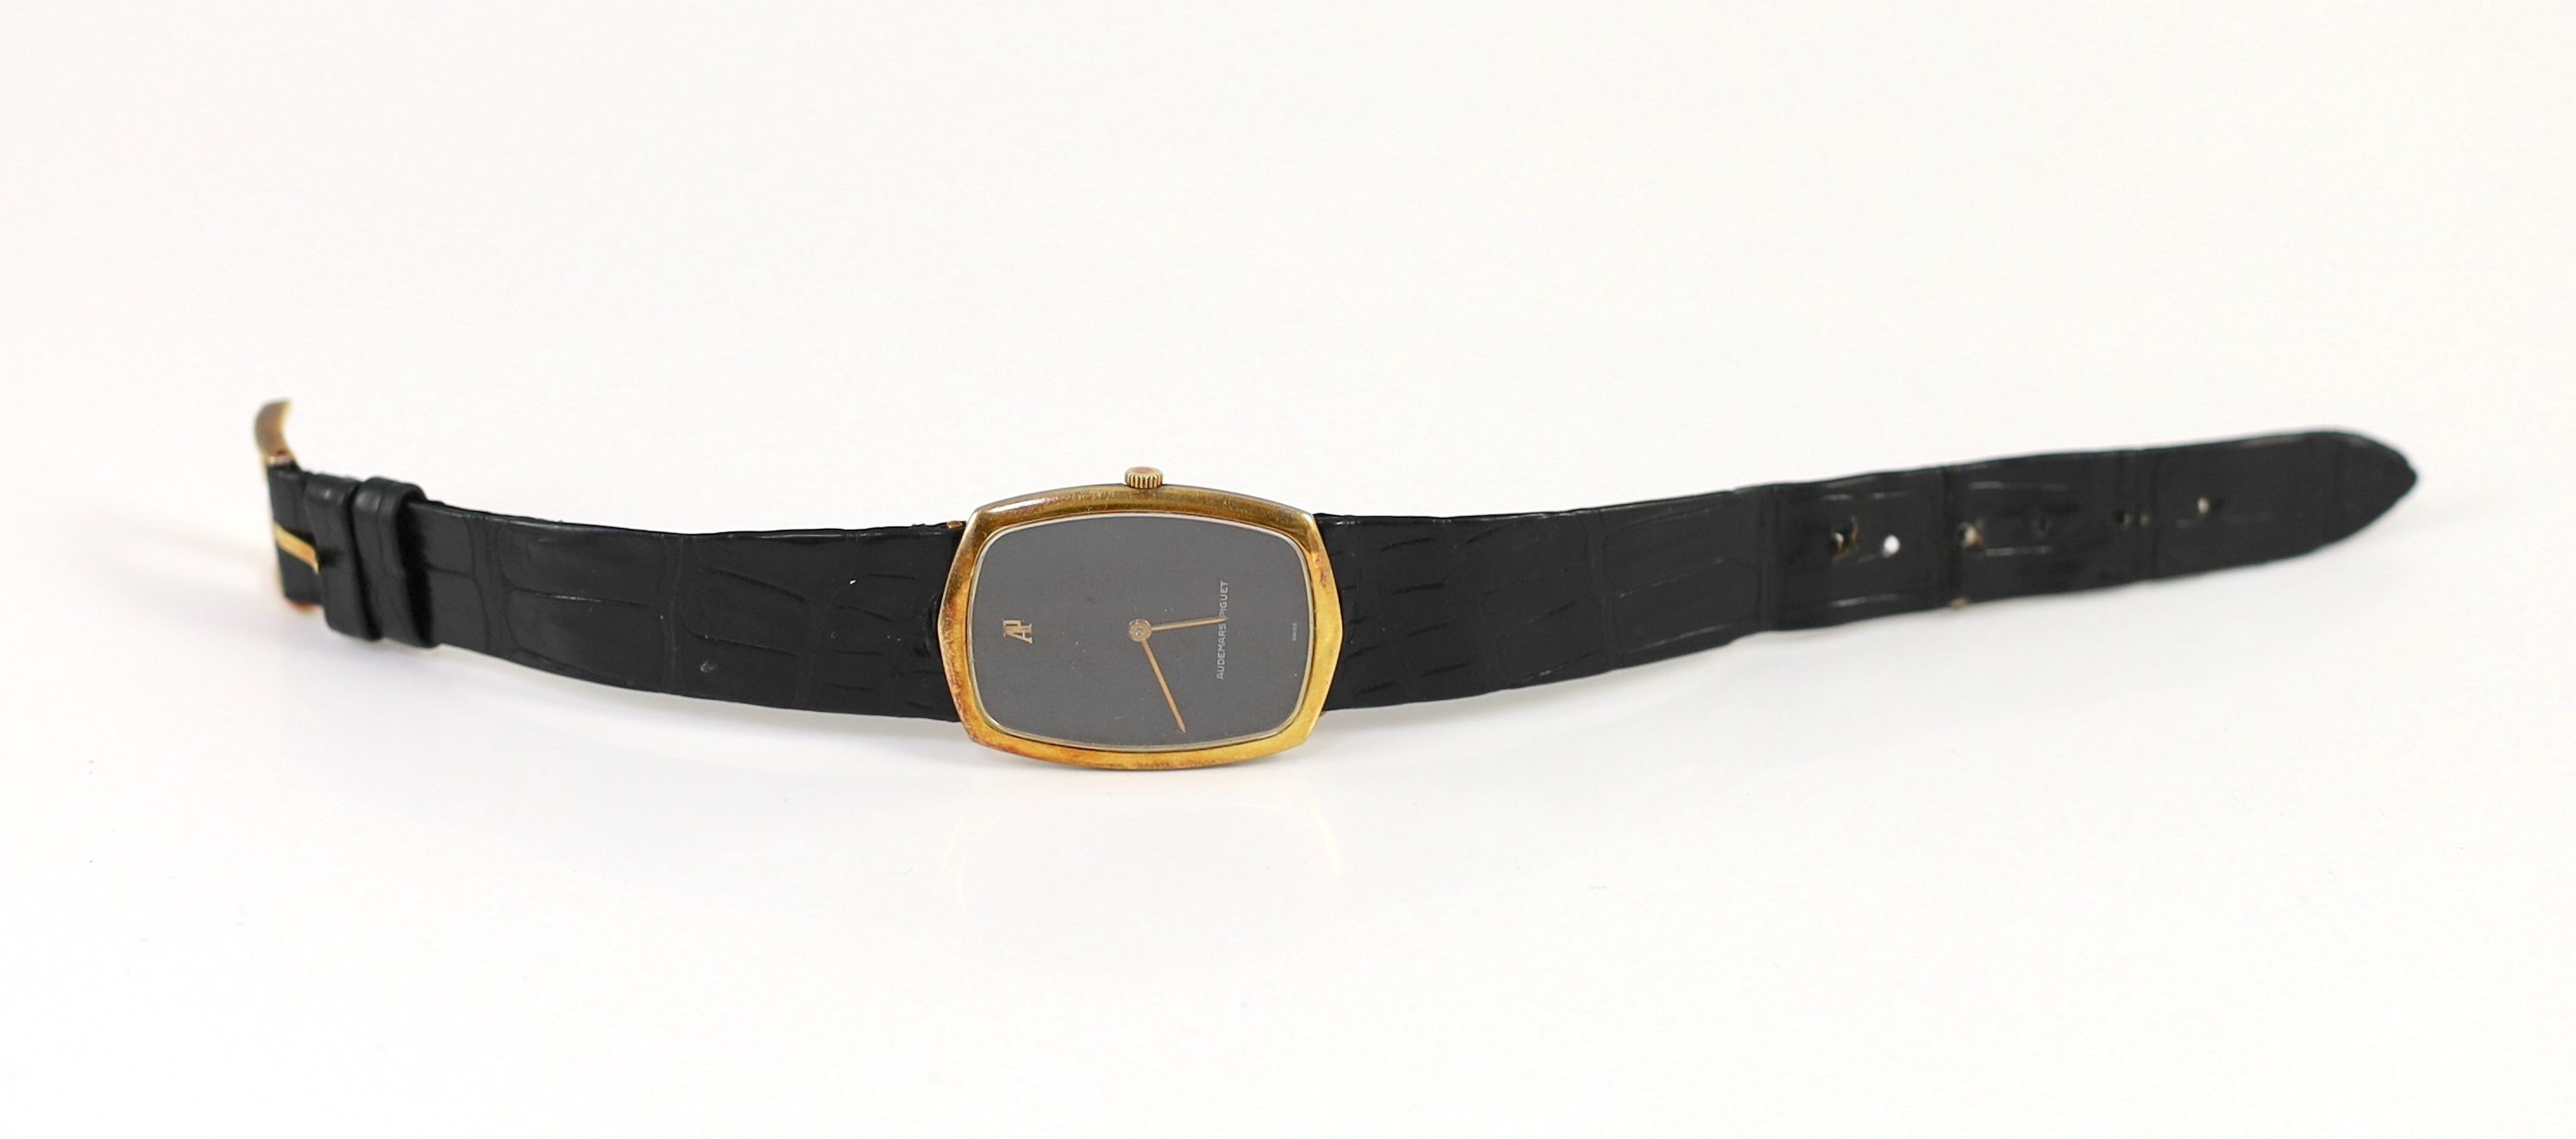 A gentleman's 18ct gold Audemars Piguet manual wind dress wrist watch